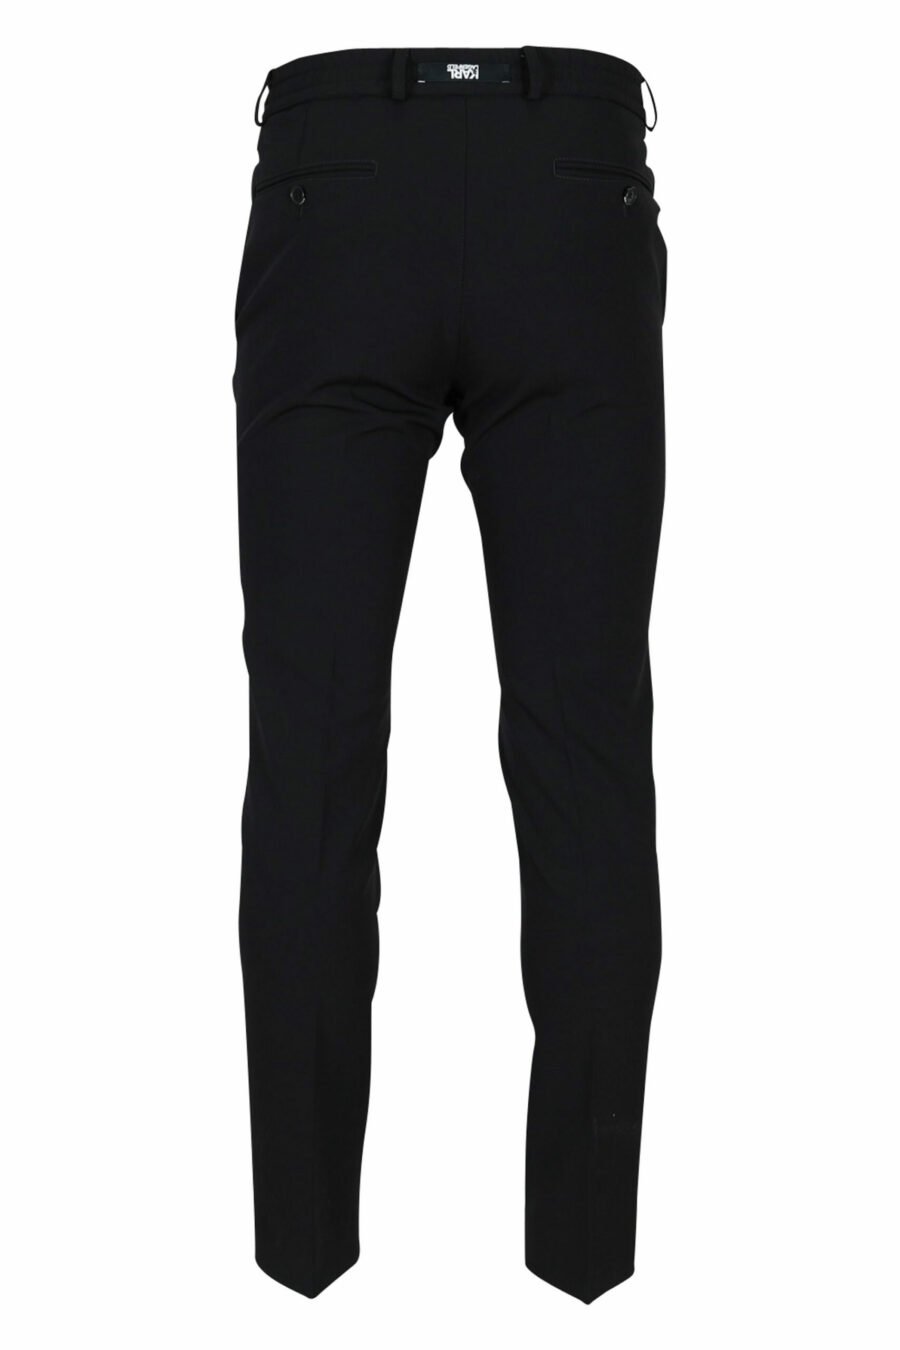 Pantalon noir avec mini-logo en caoutchouc - 4062226374224 2 à l'échelle